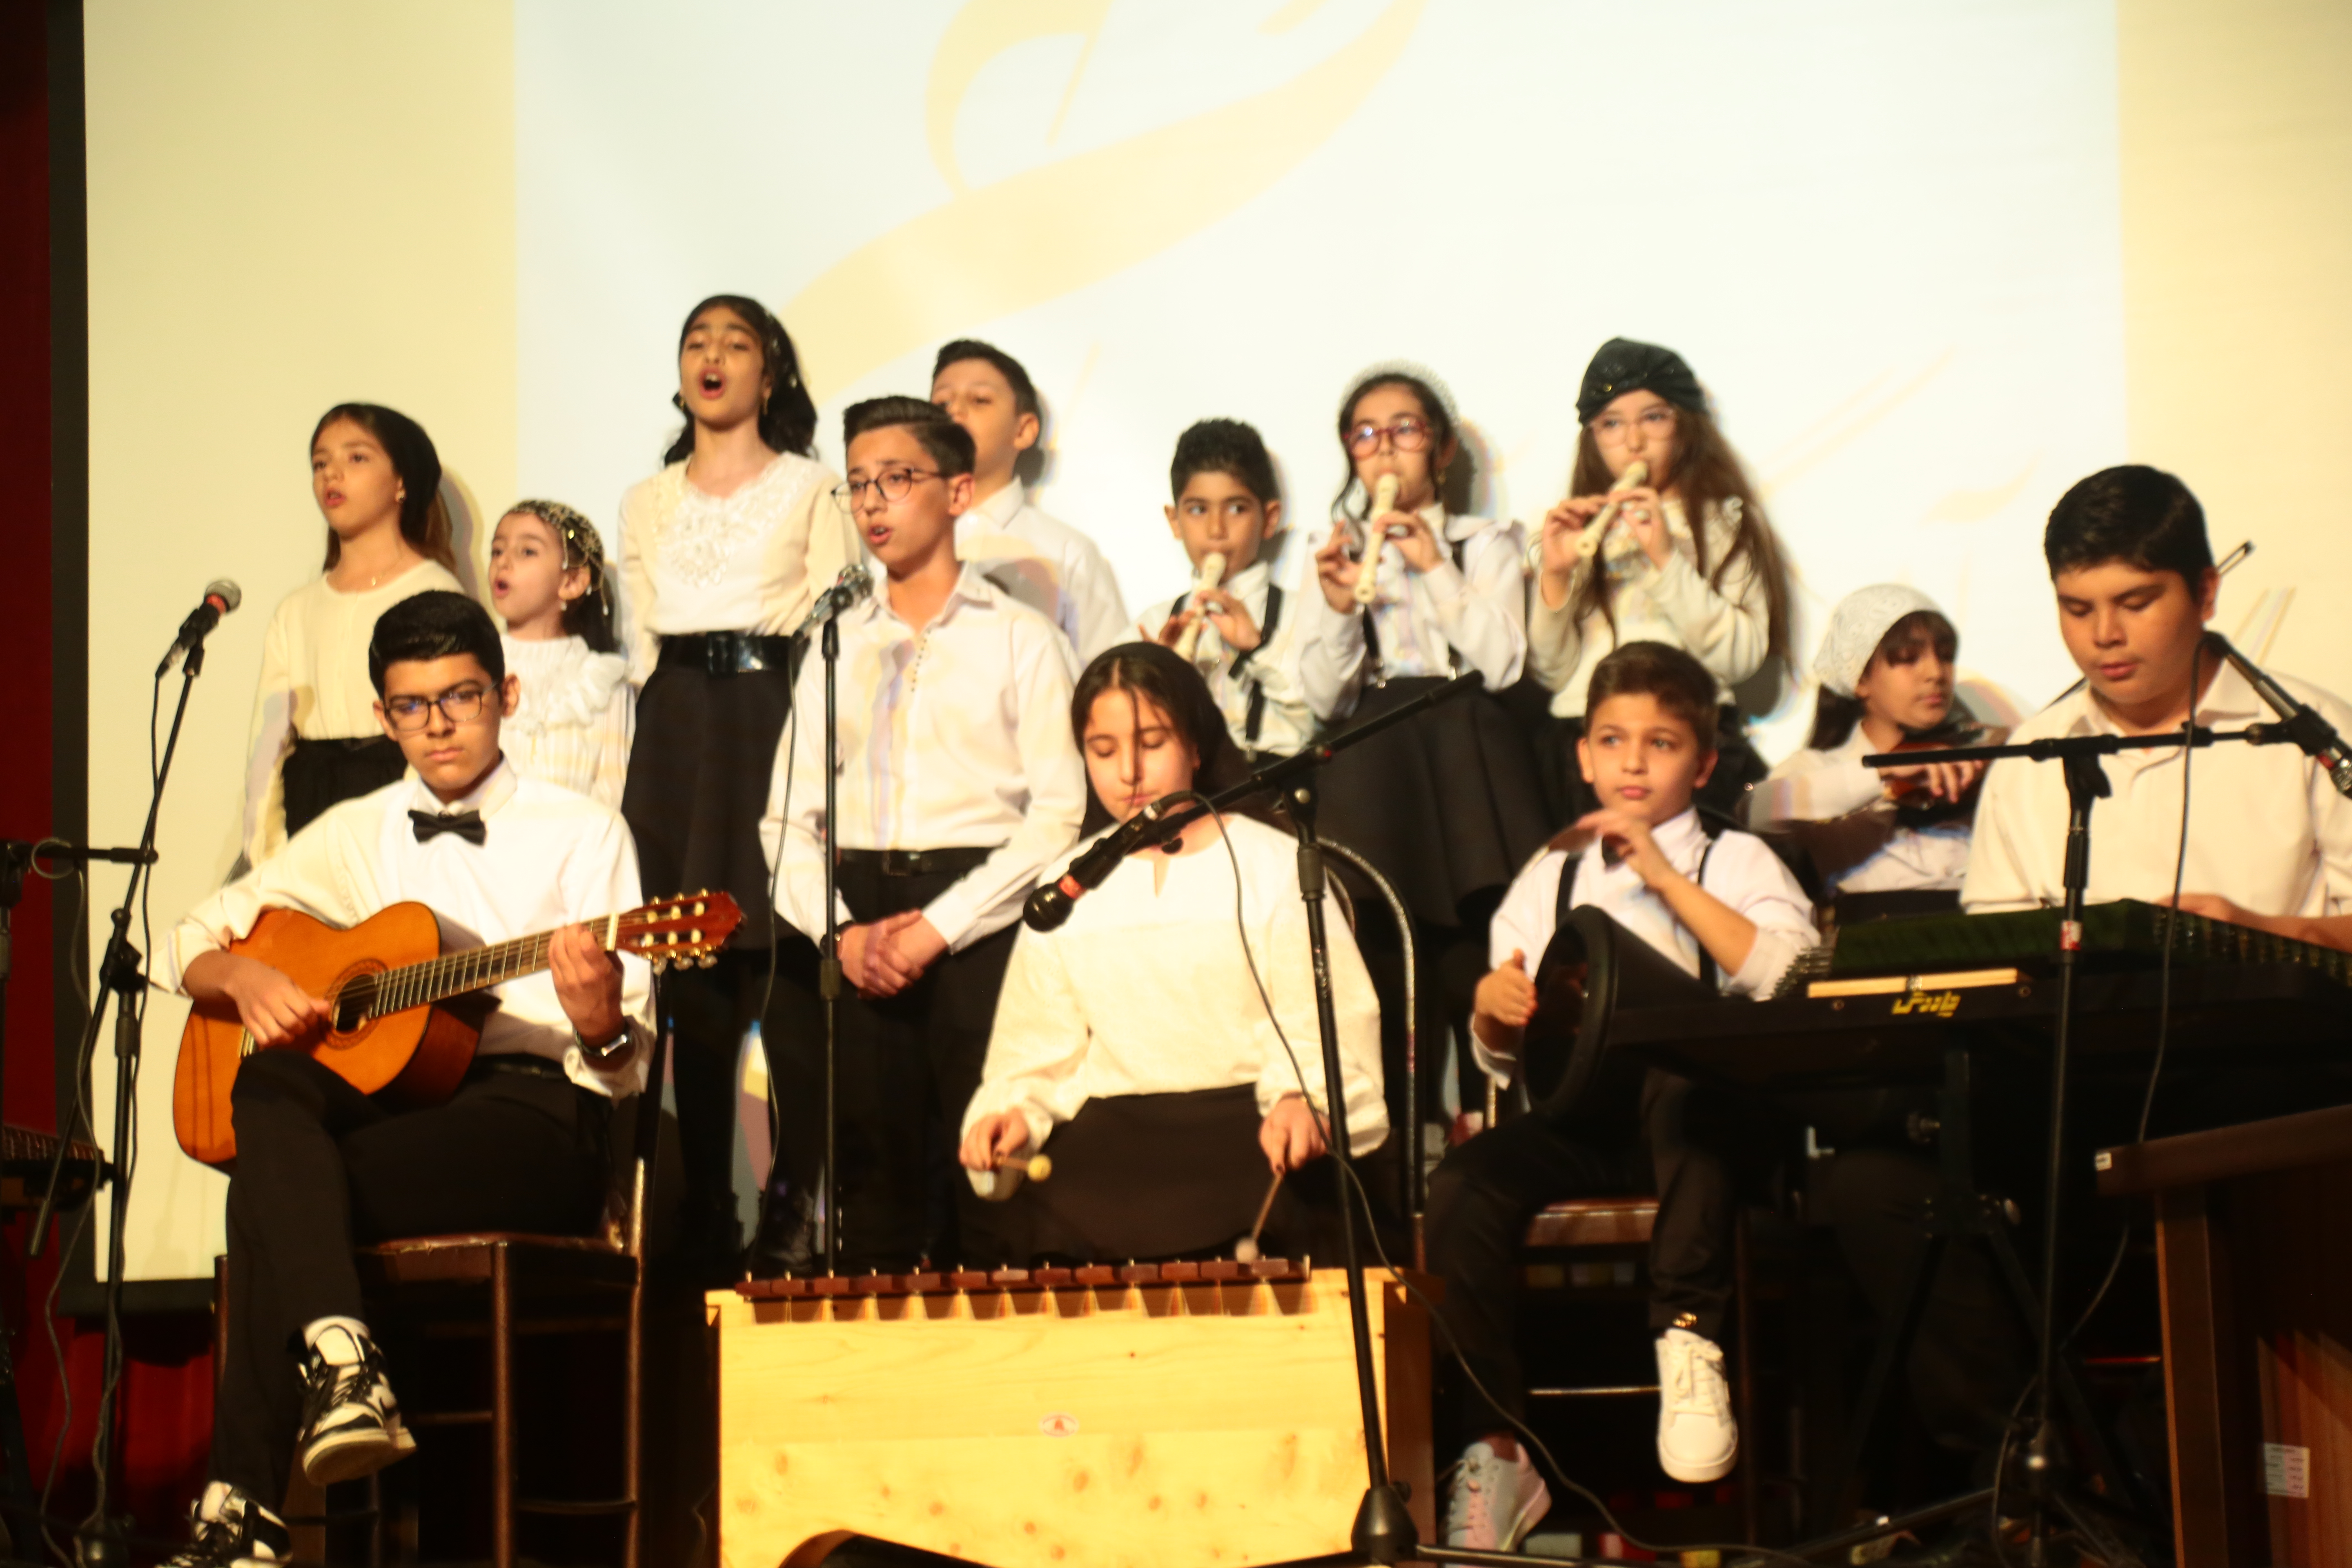 اجرای گروه نهال و جوانه آموزشگاه اردیبهشت شیراز